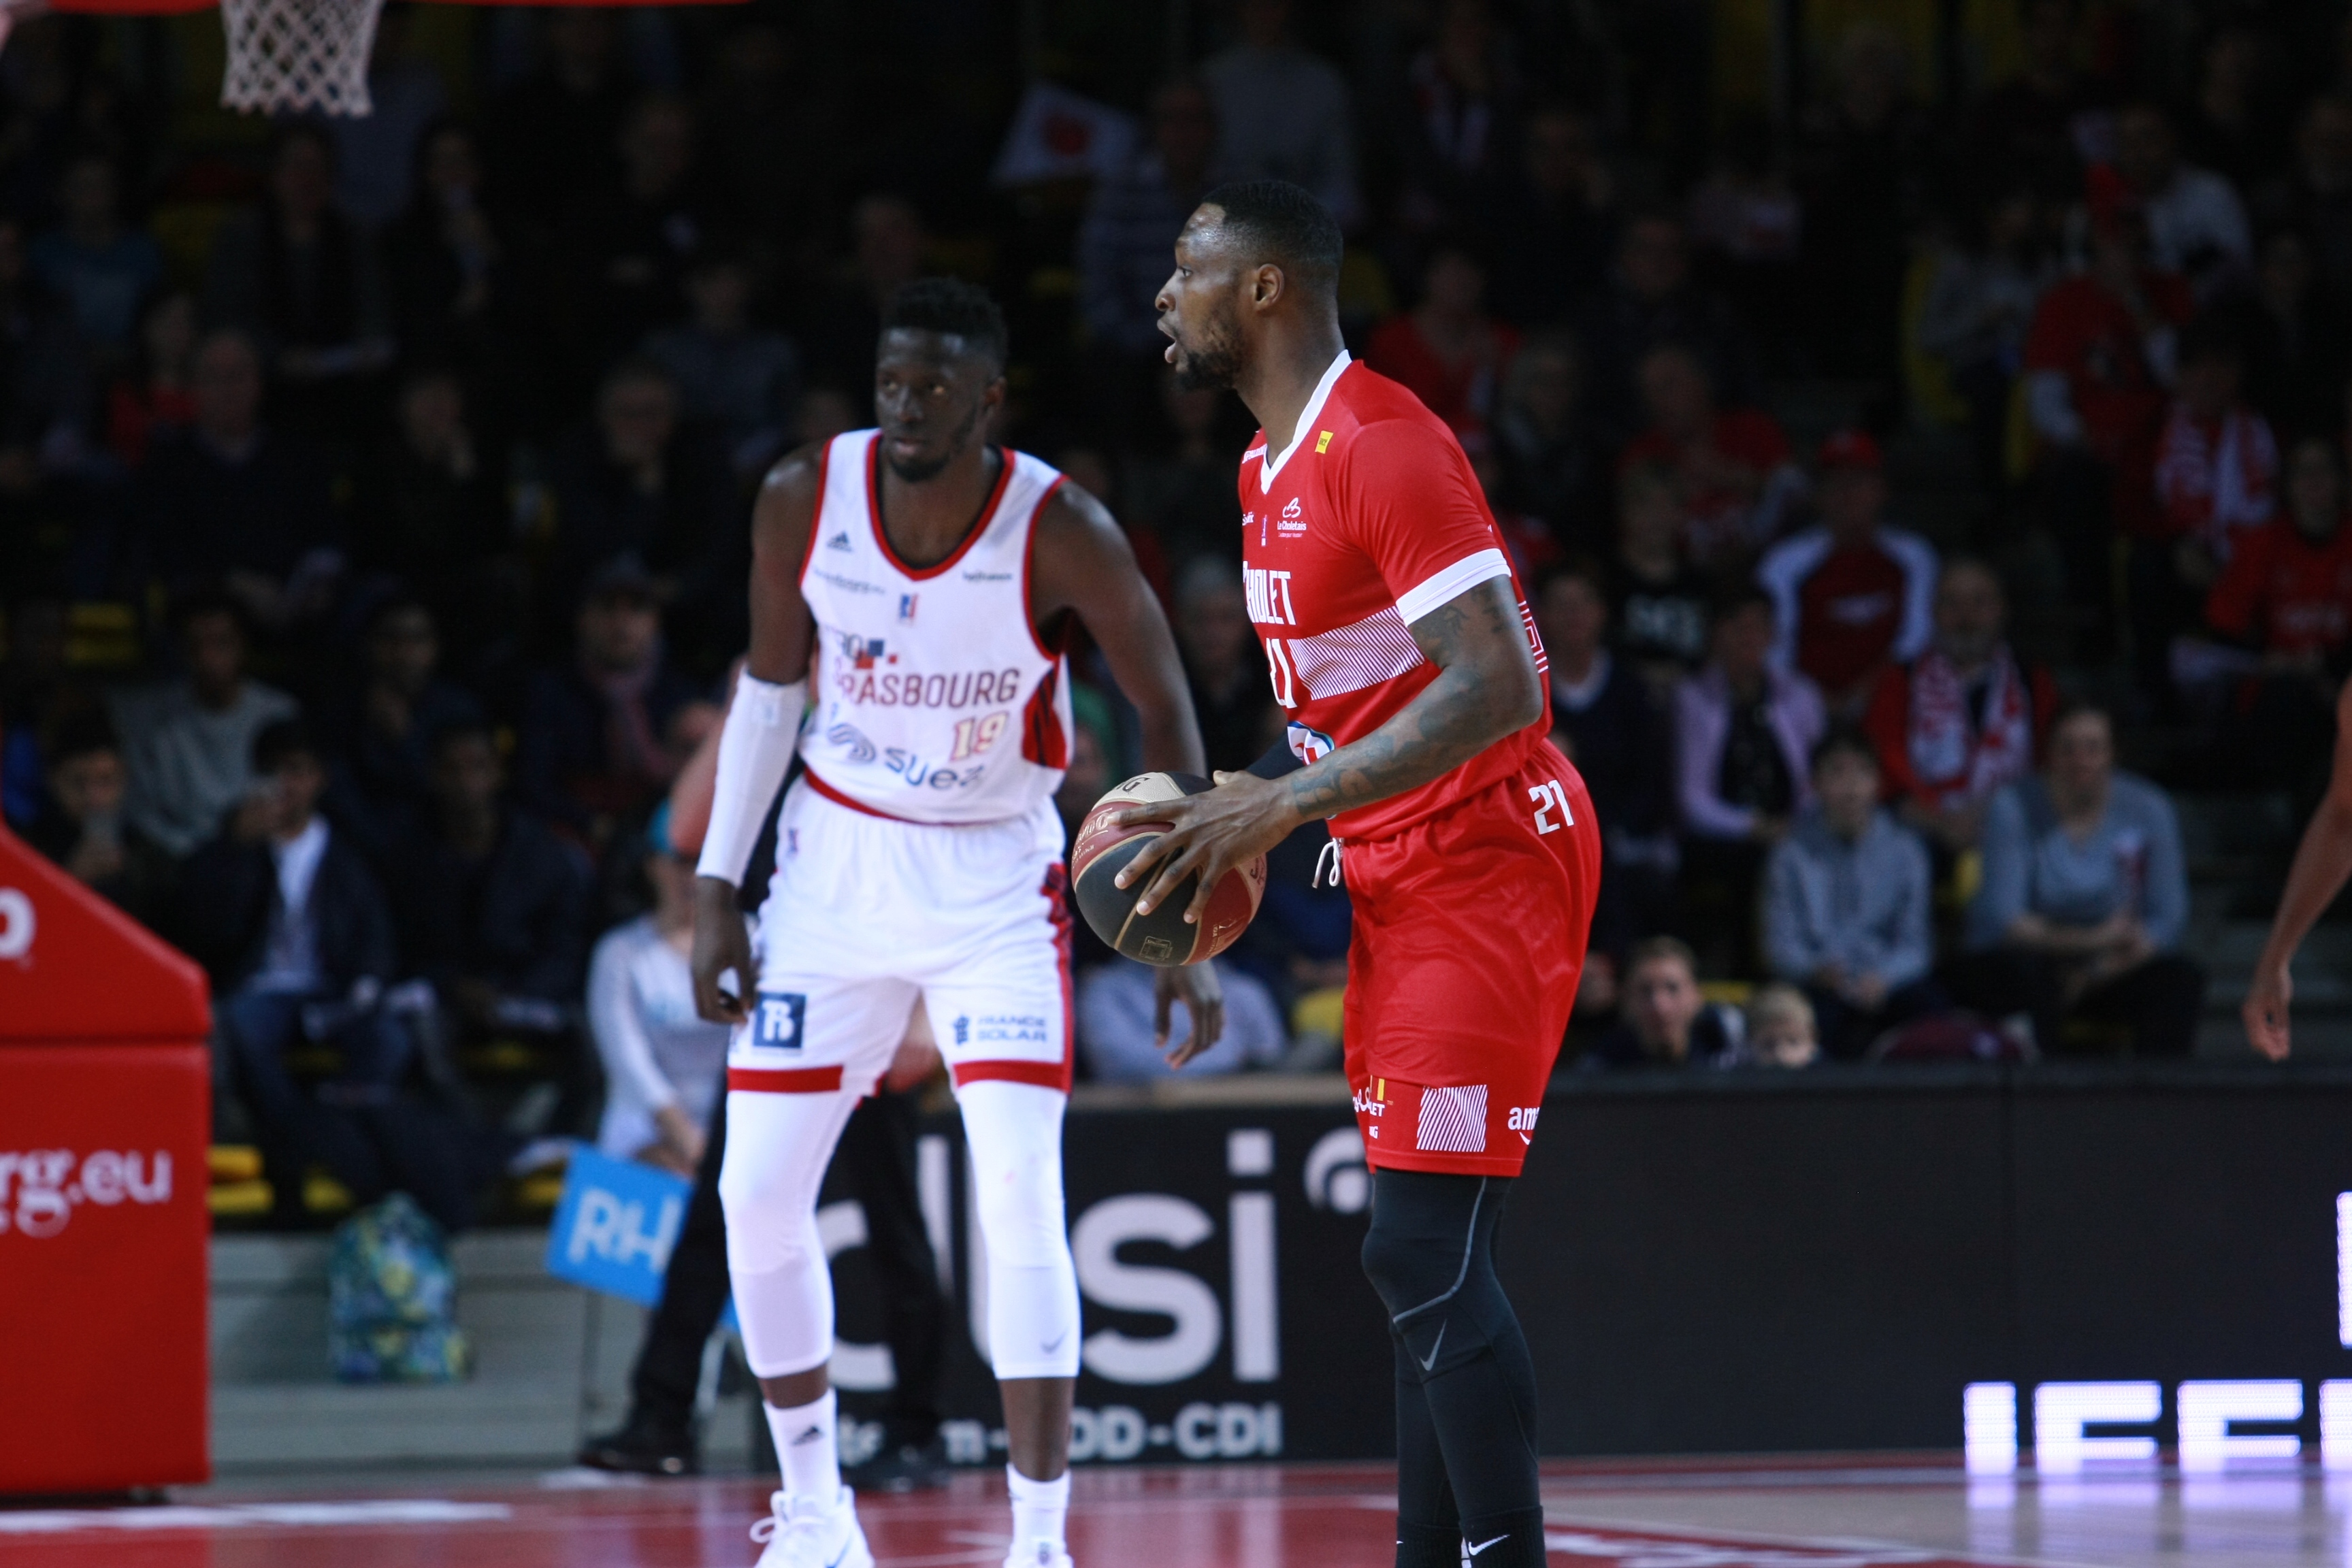 Strasbourg IG - Cholet Basket (02/02/19)